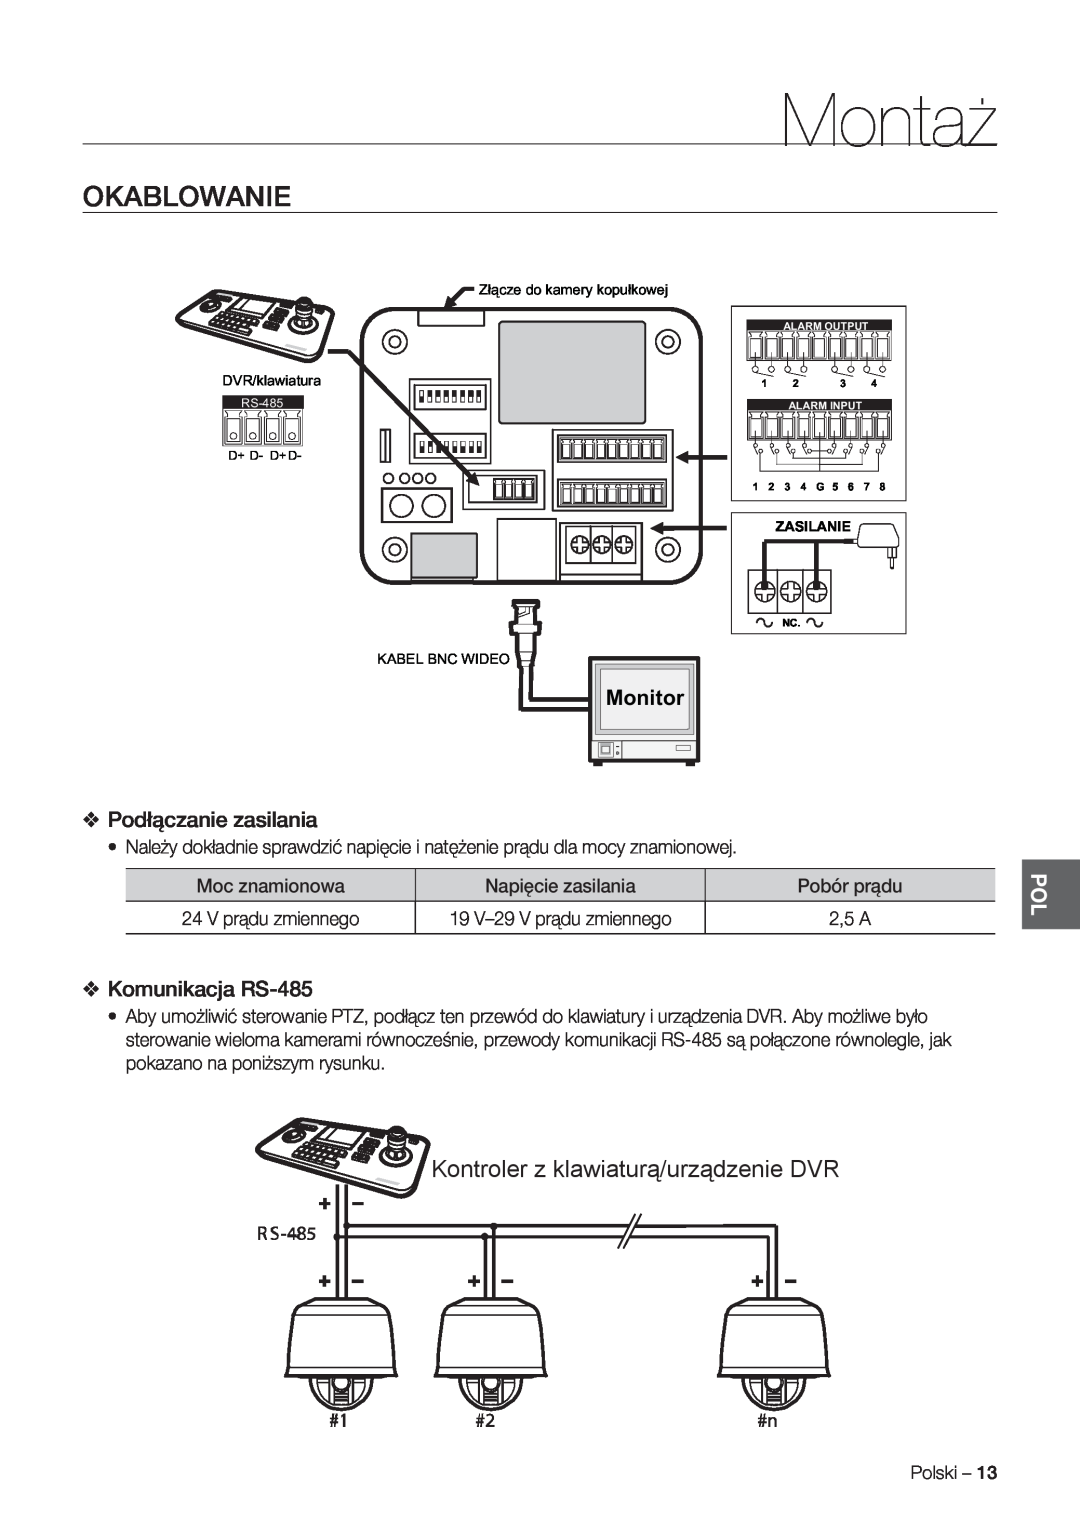 Samsung SCC-C7478P Okablowanie, Kontroler z klawiaturą/urządzenie DVR, Podłączanie zasilania, Komunikacja RS-485, Montaż 